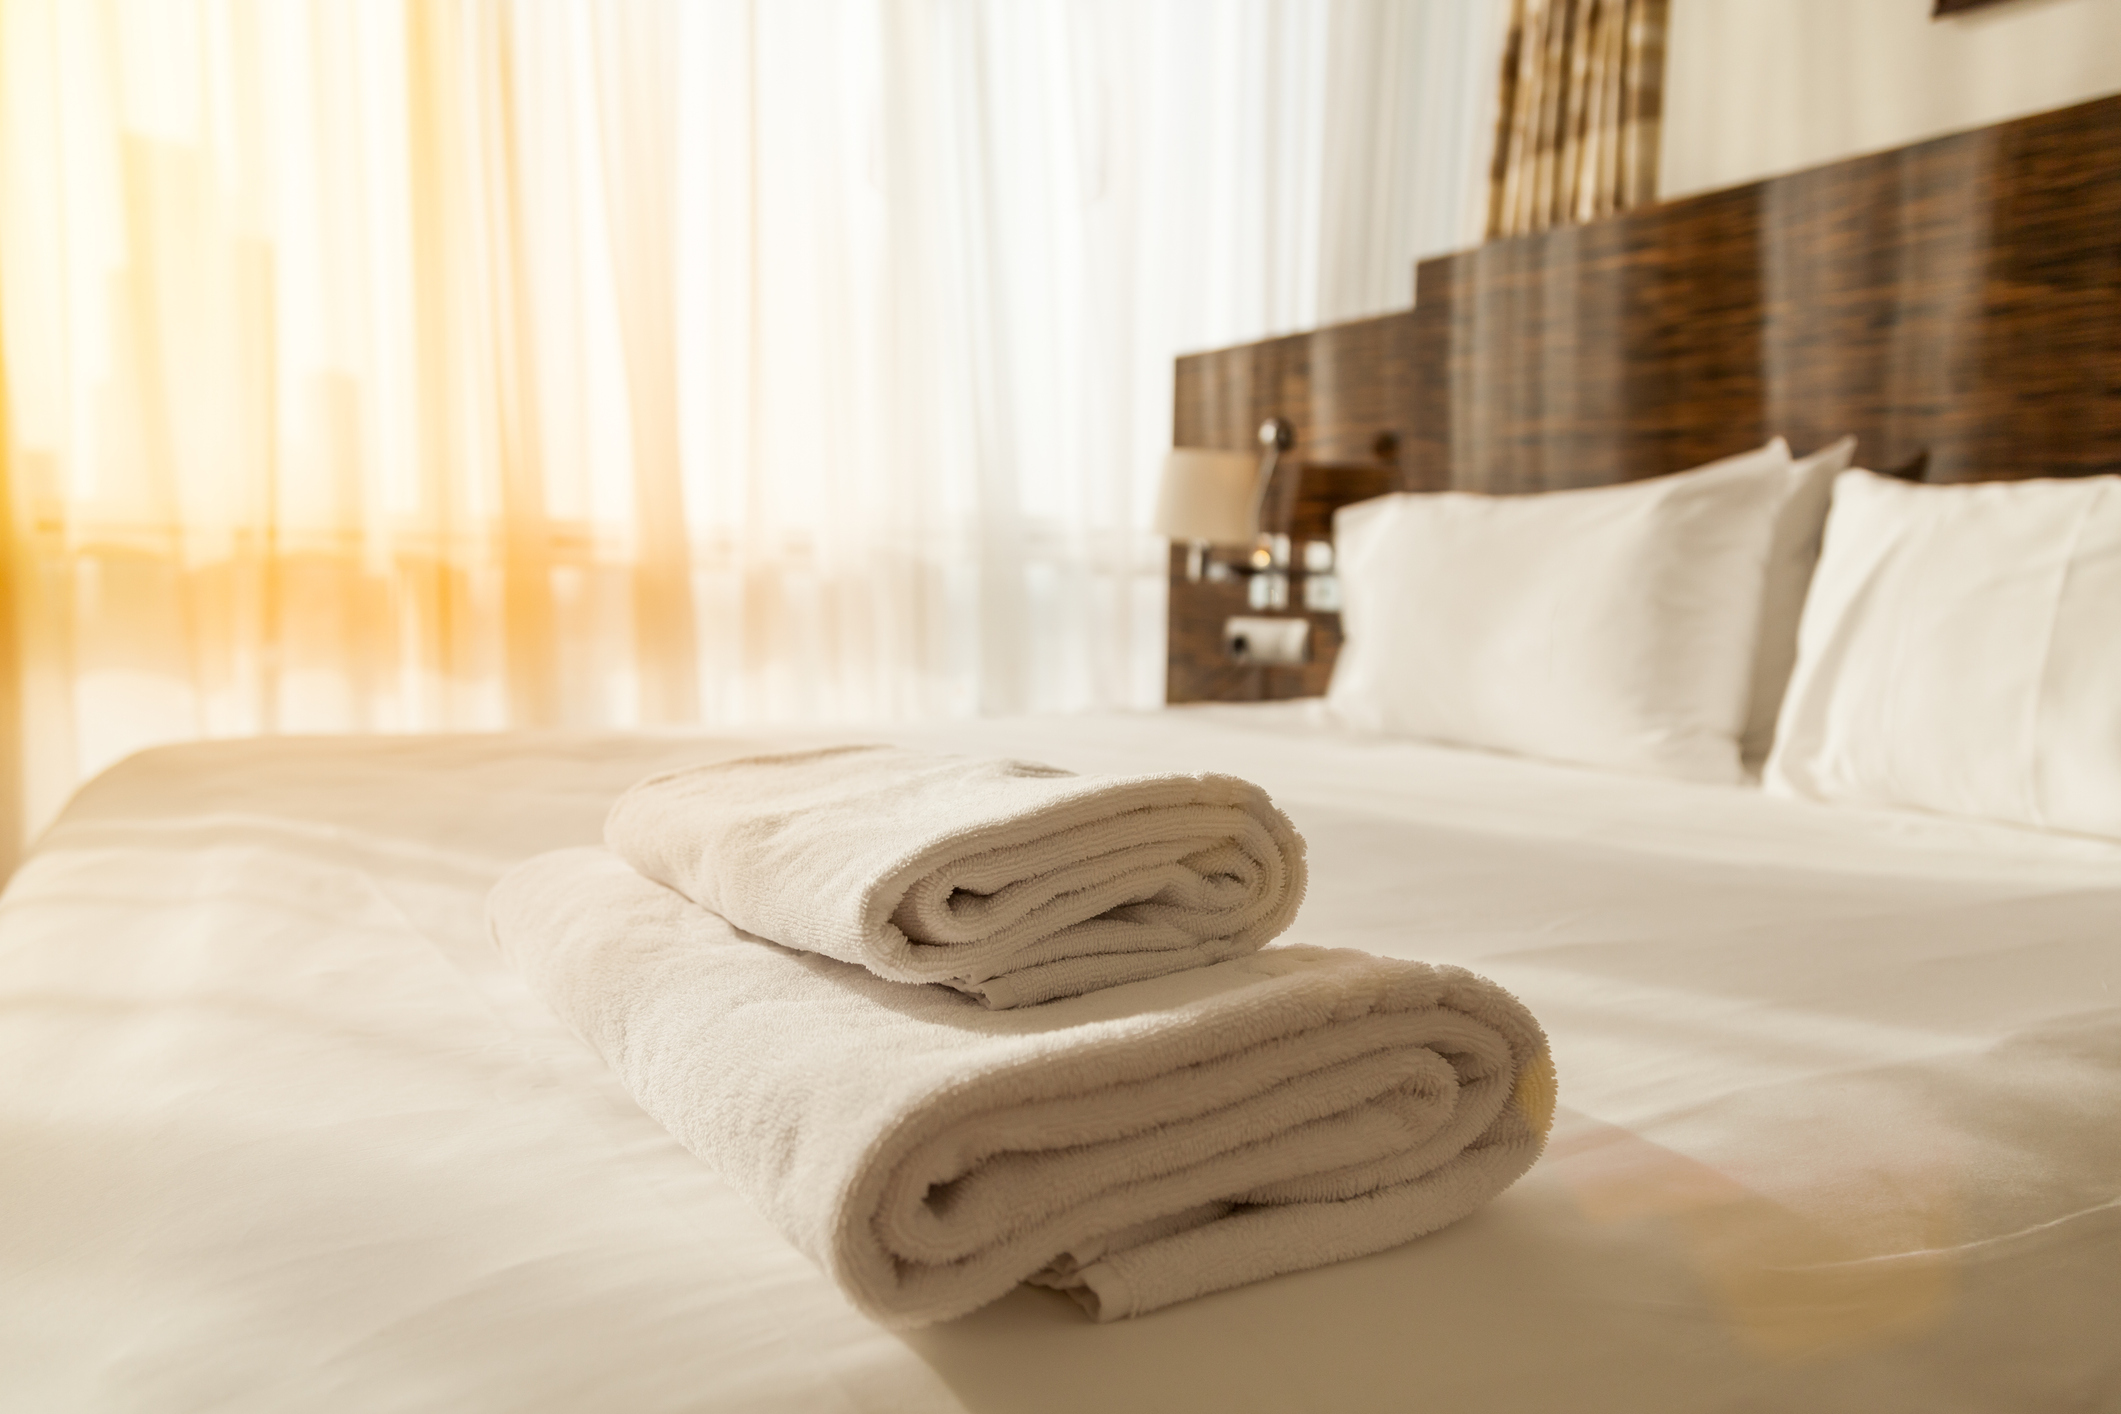 Egy szálloda mosónőjé mondta el a titkot: ezt kell a törölközők mellé  önteni mosás előtt - Blikk Rúzs